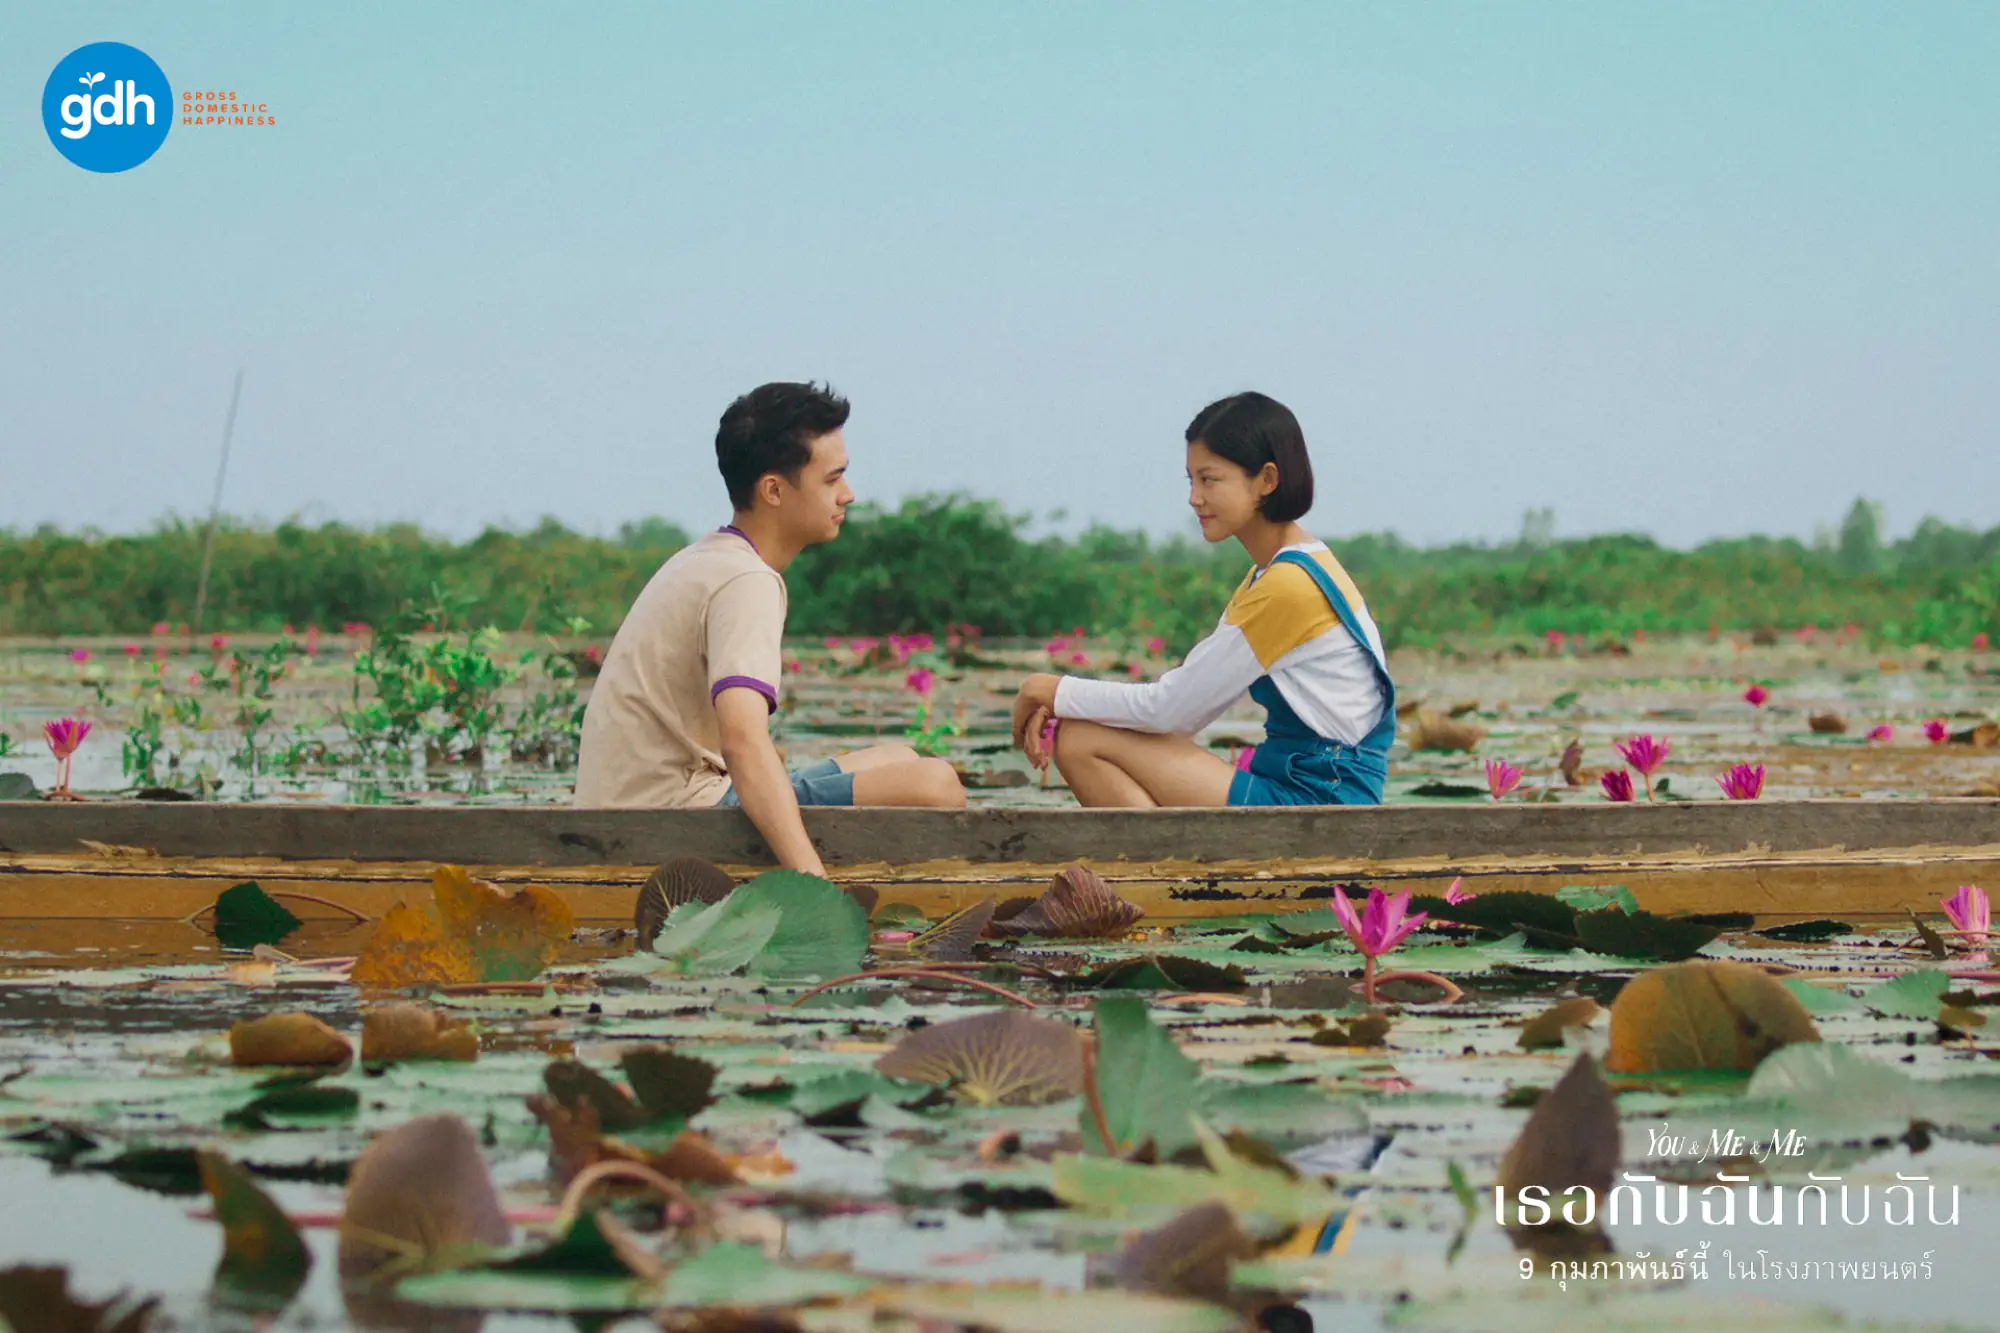 泰國電影《你與我和我》(เธอกับฉันกับฉัน;You & Me & Me)劇照（圖片來源：GDH）